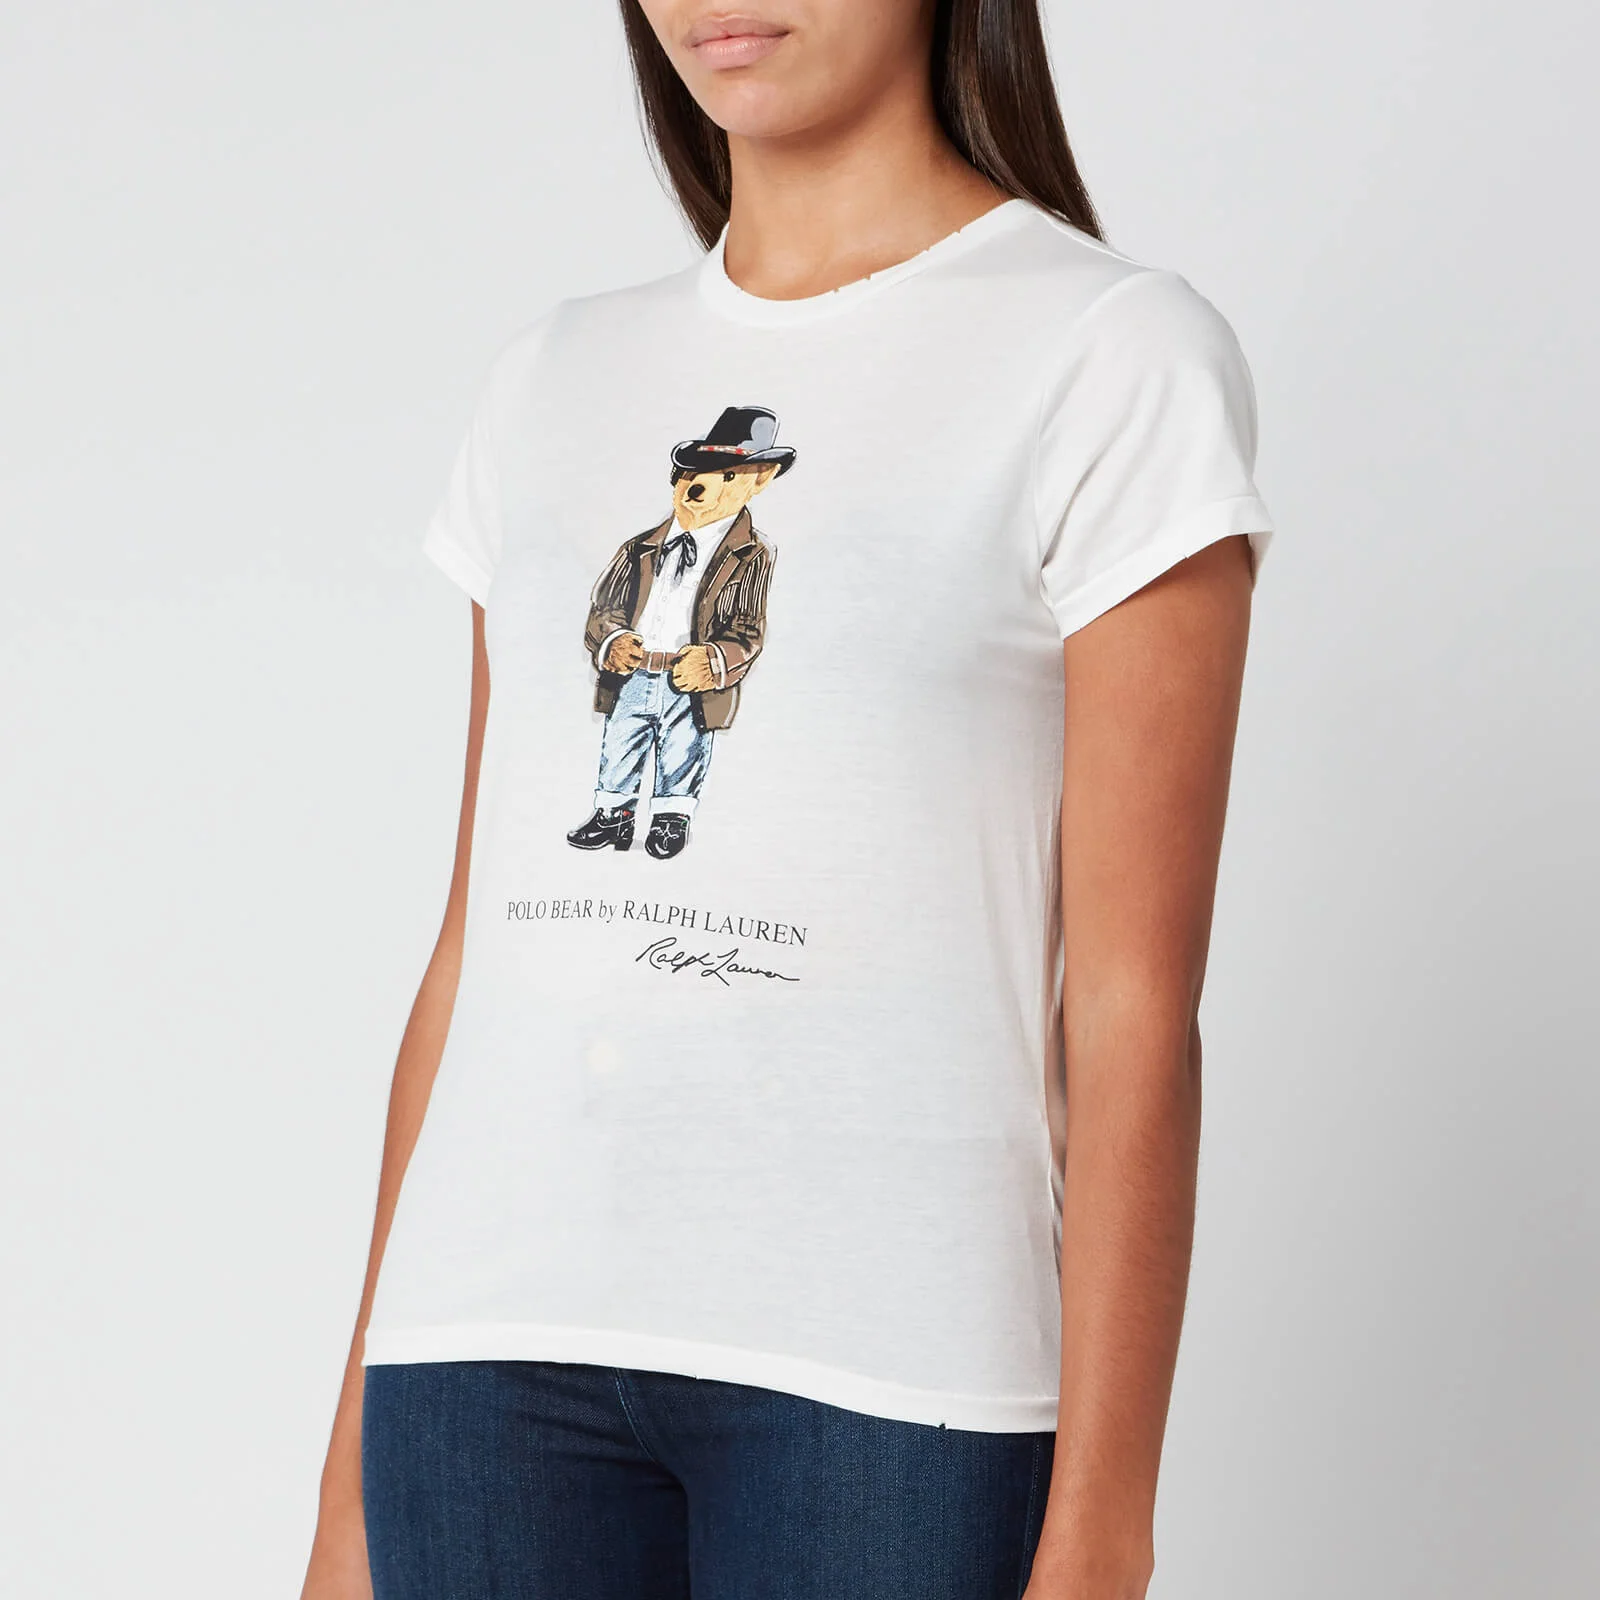 Polo Ralph Lauren Women's Cowboy Bear T-Shirt - Nevis Image 1